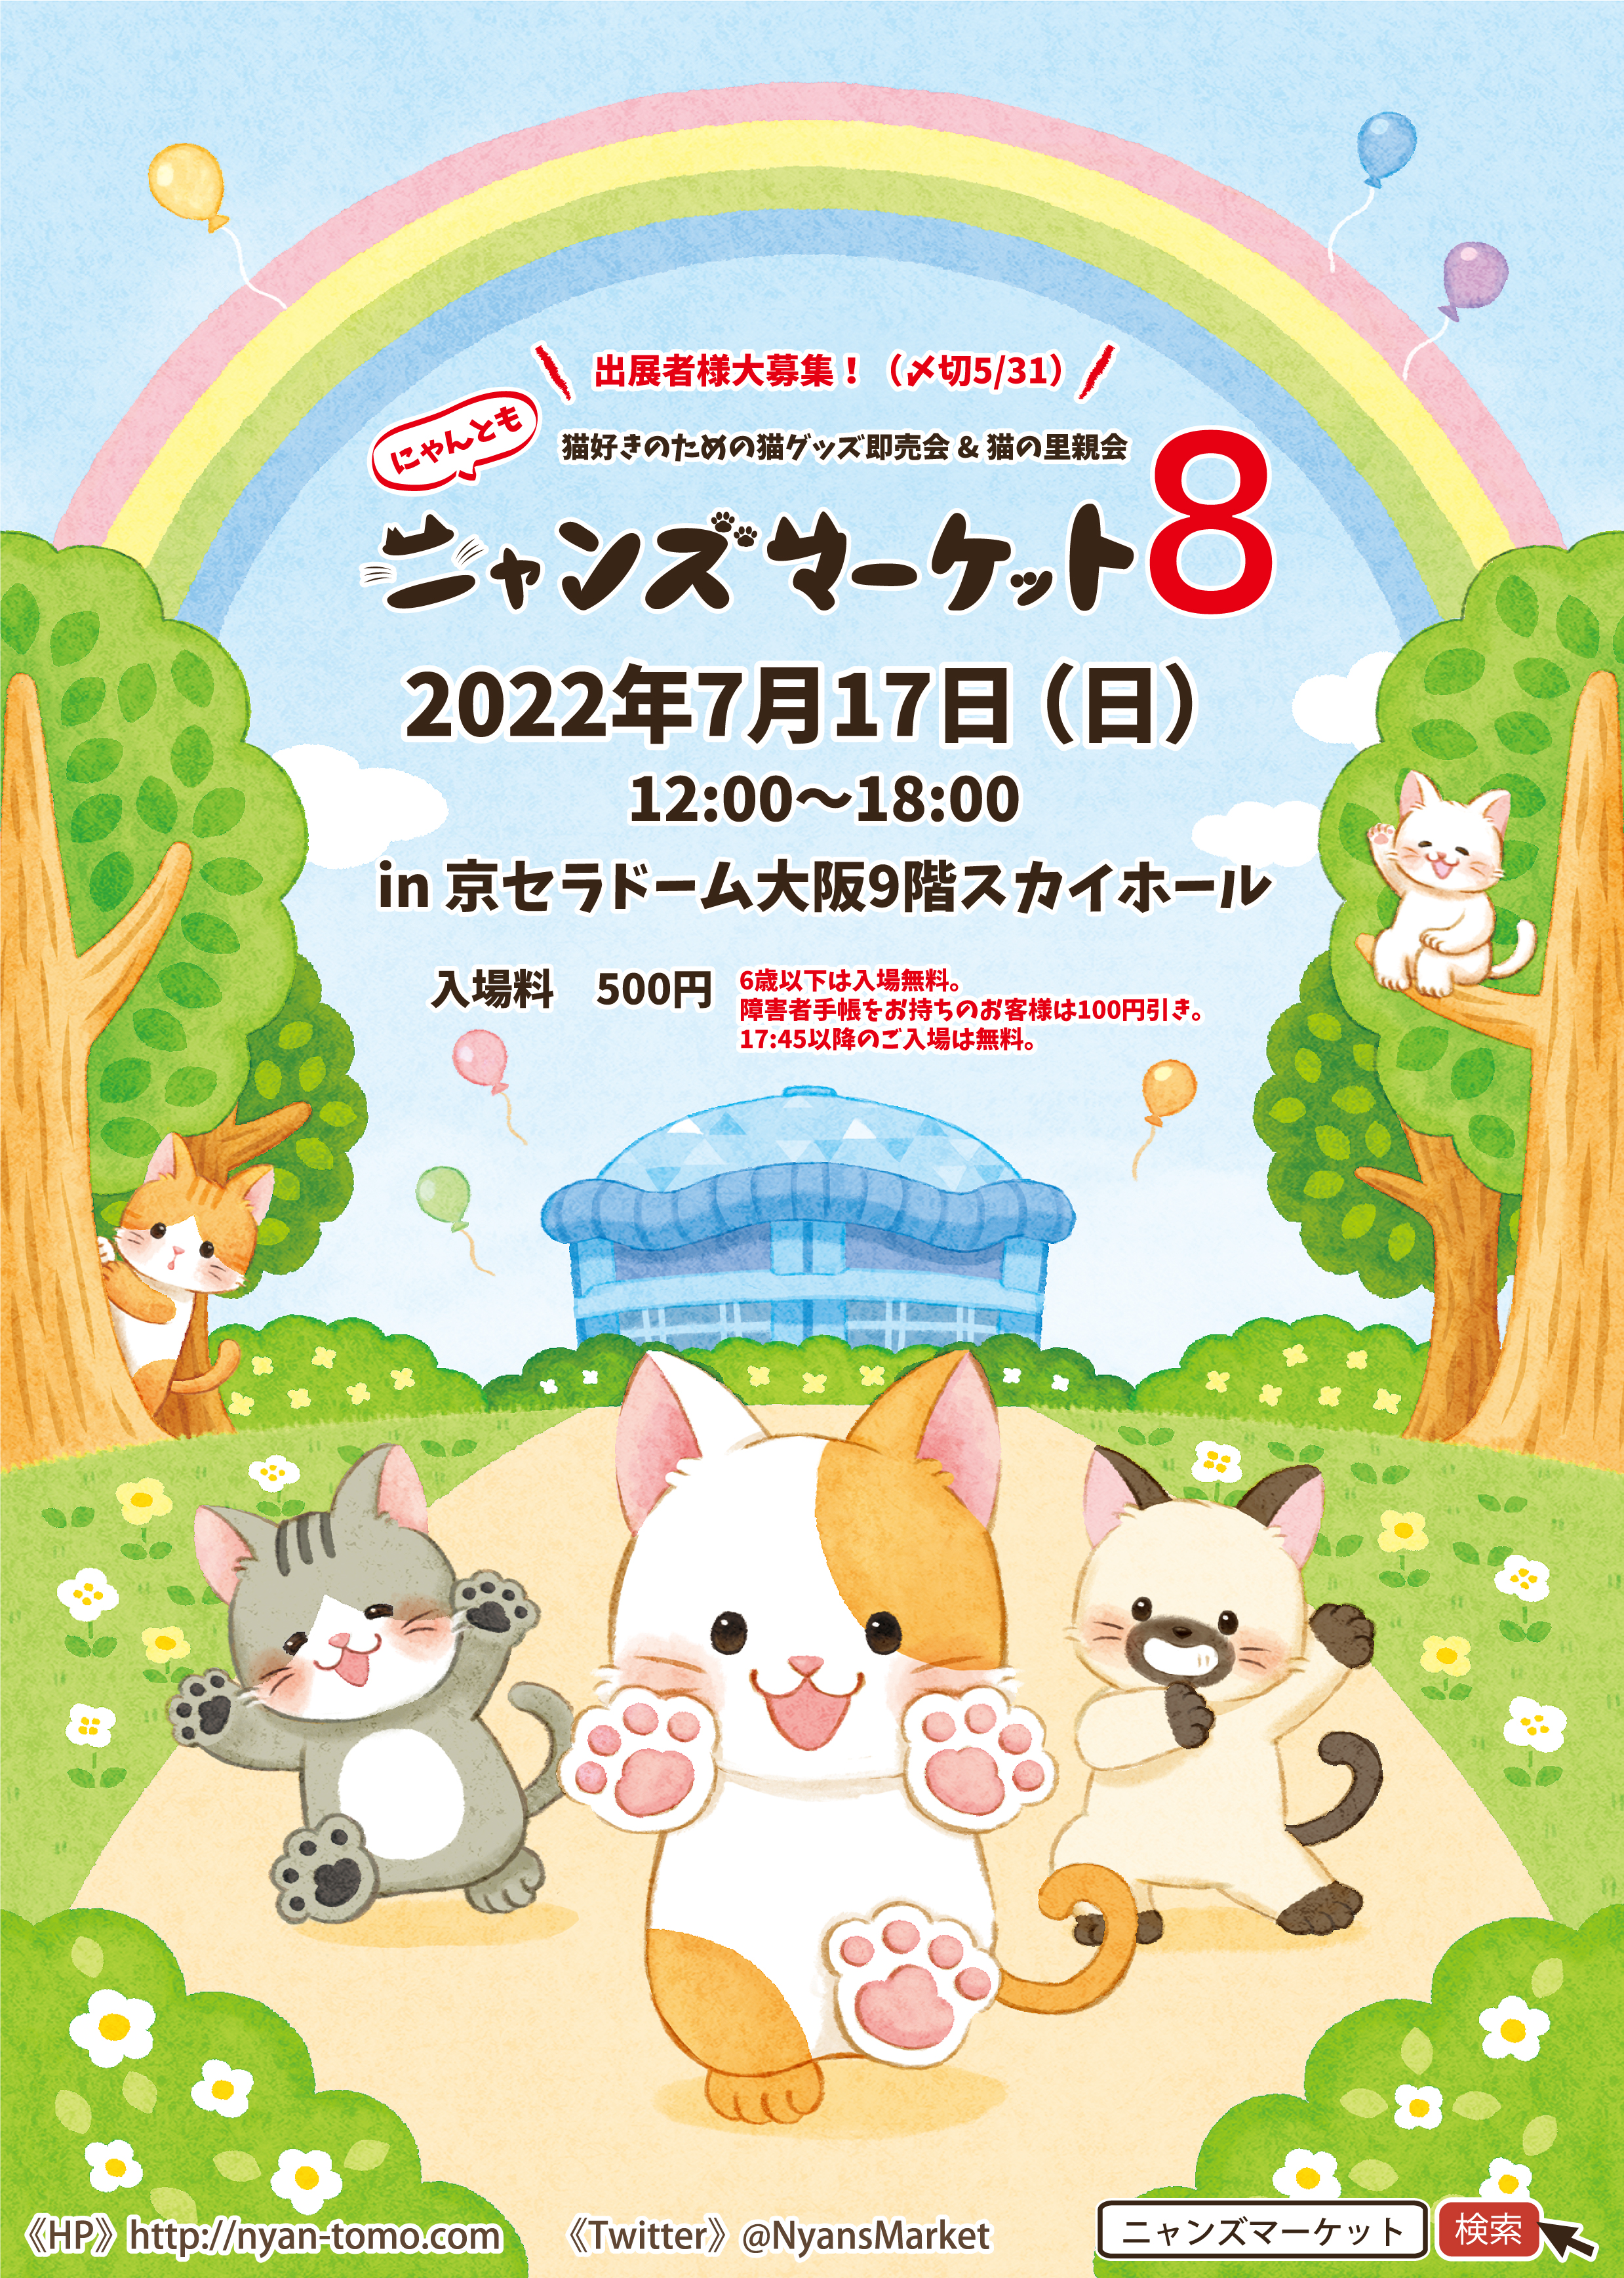 猫|イベント|大阪|関西|ねこ|ハンドメイド|猫グッズ|即売会|保護猫|ネコ|ニャンズマーケット|にゃんとも|猫好きのための猫グッズ即売会にゃんともニャンズマーケット